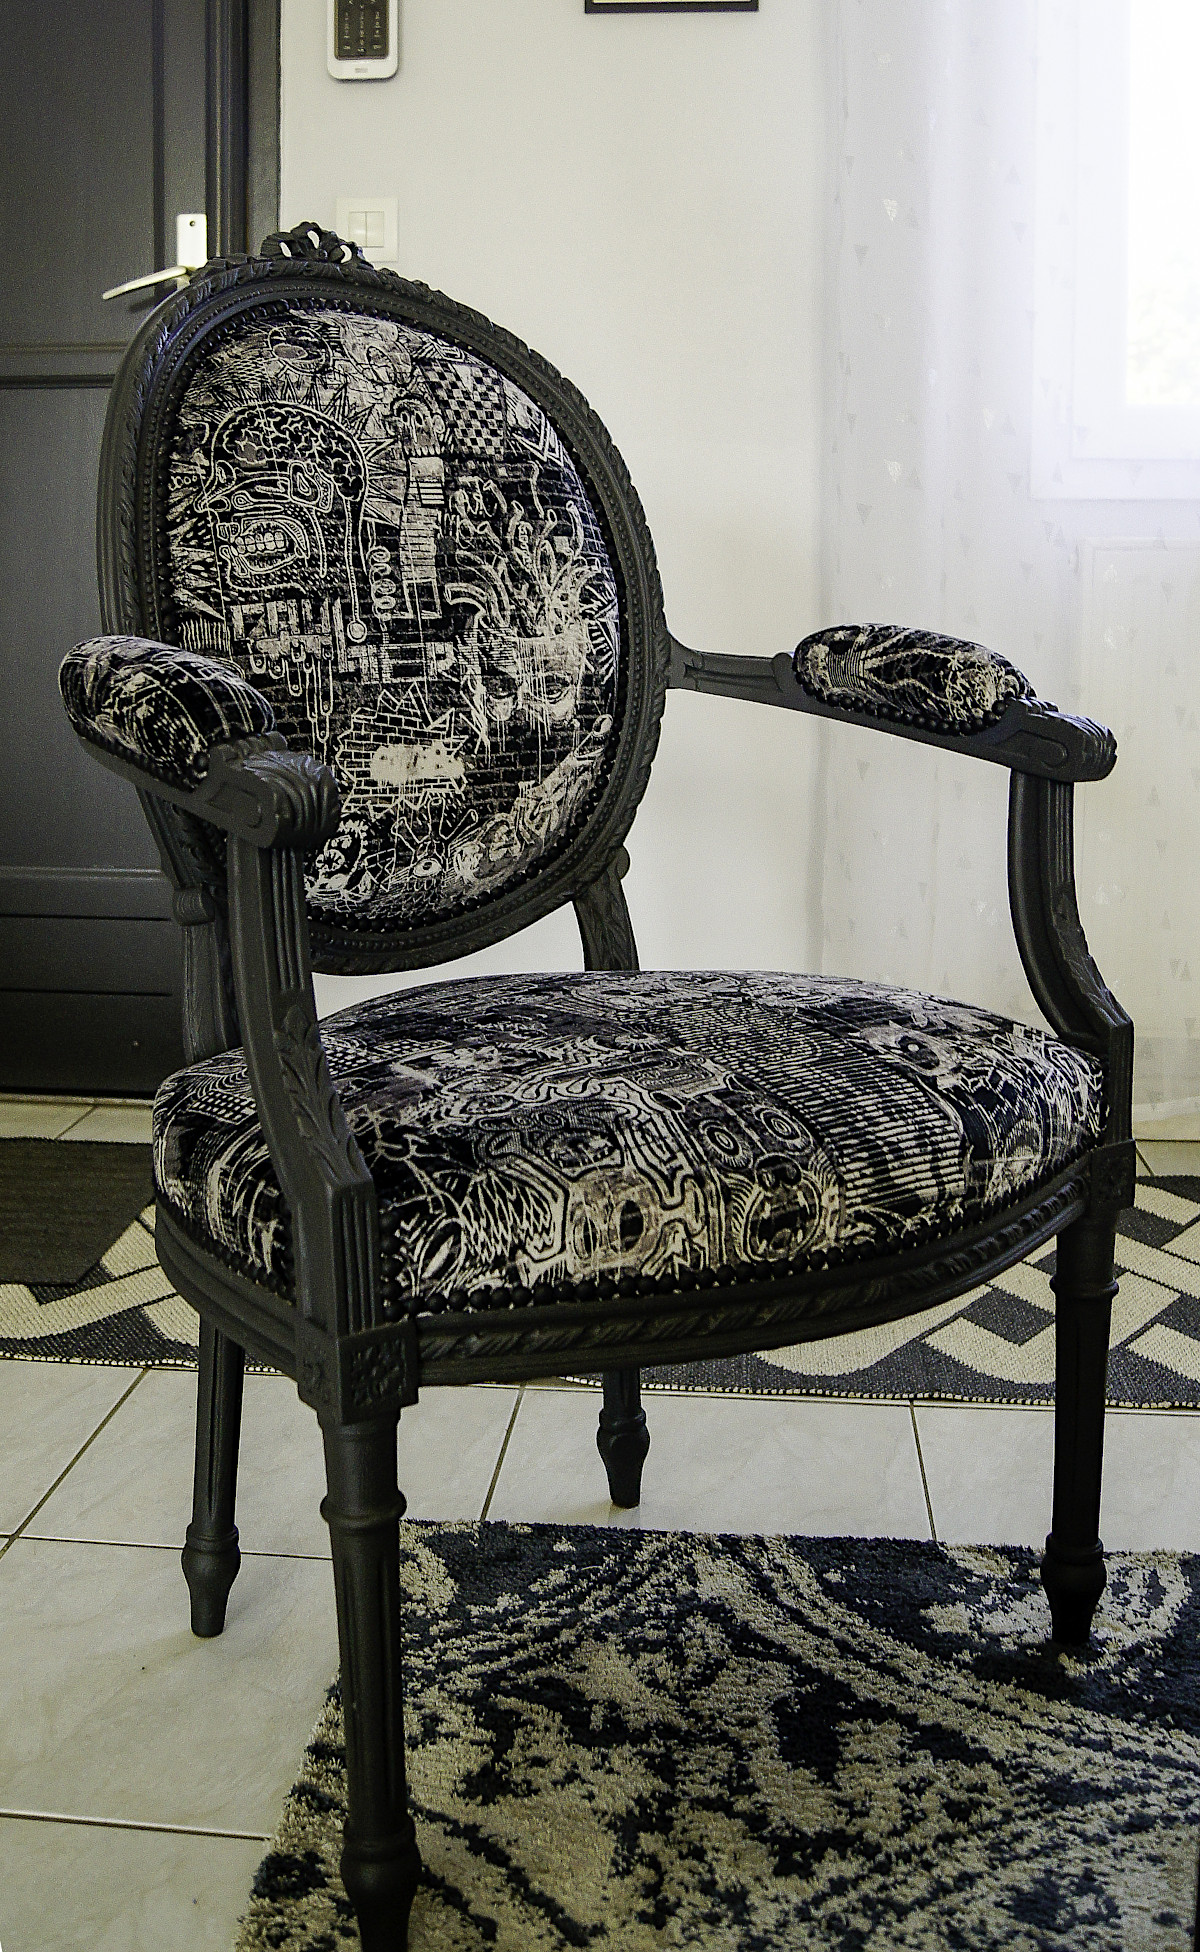 Décapage et relooking de fauteuils Louis XVI, finition couleur réglisse. Tissus noir et beige.